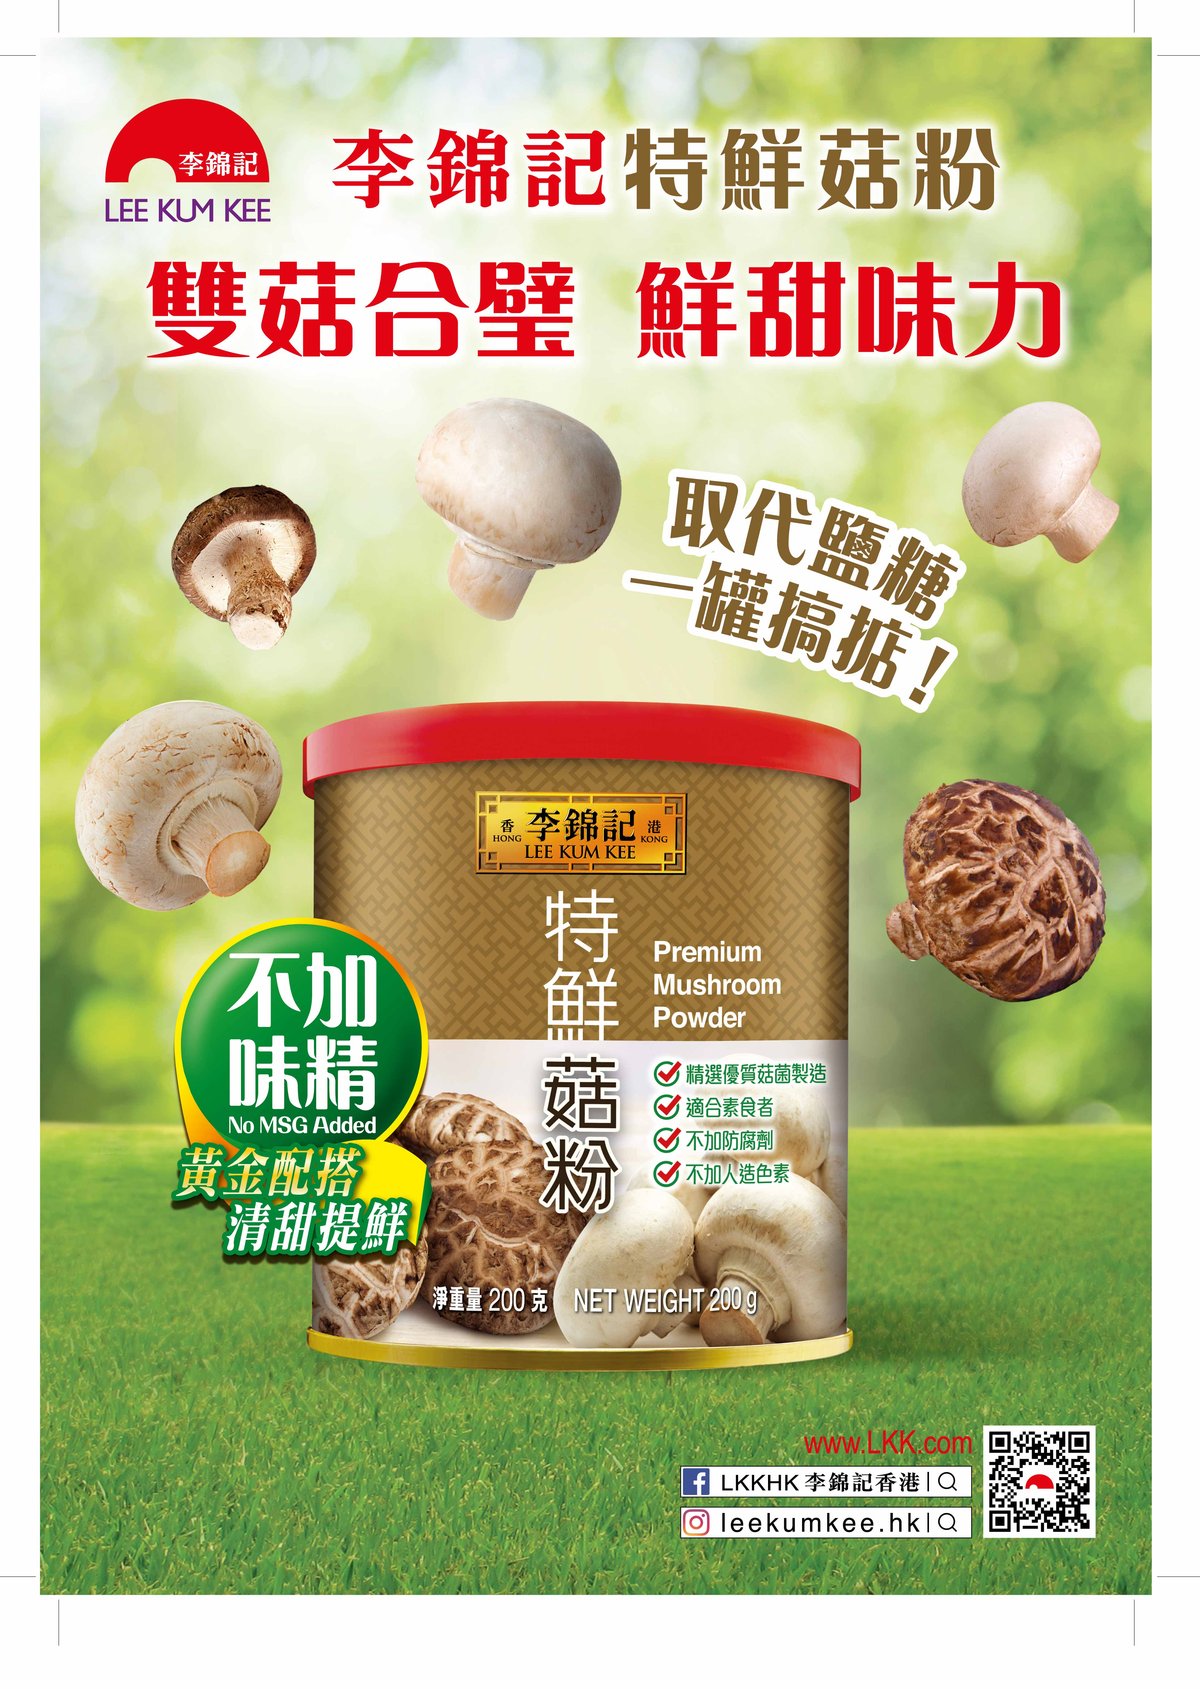 Lee Kum Kee Mushroom Powder